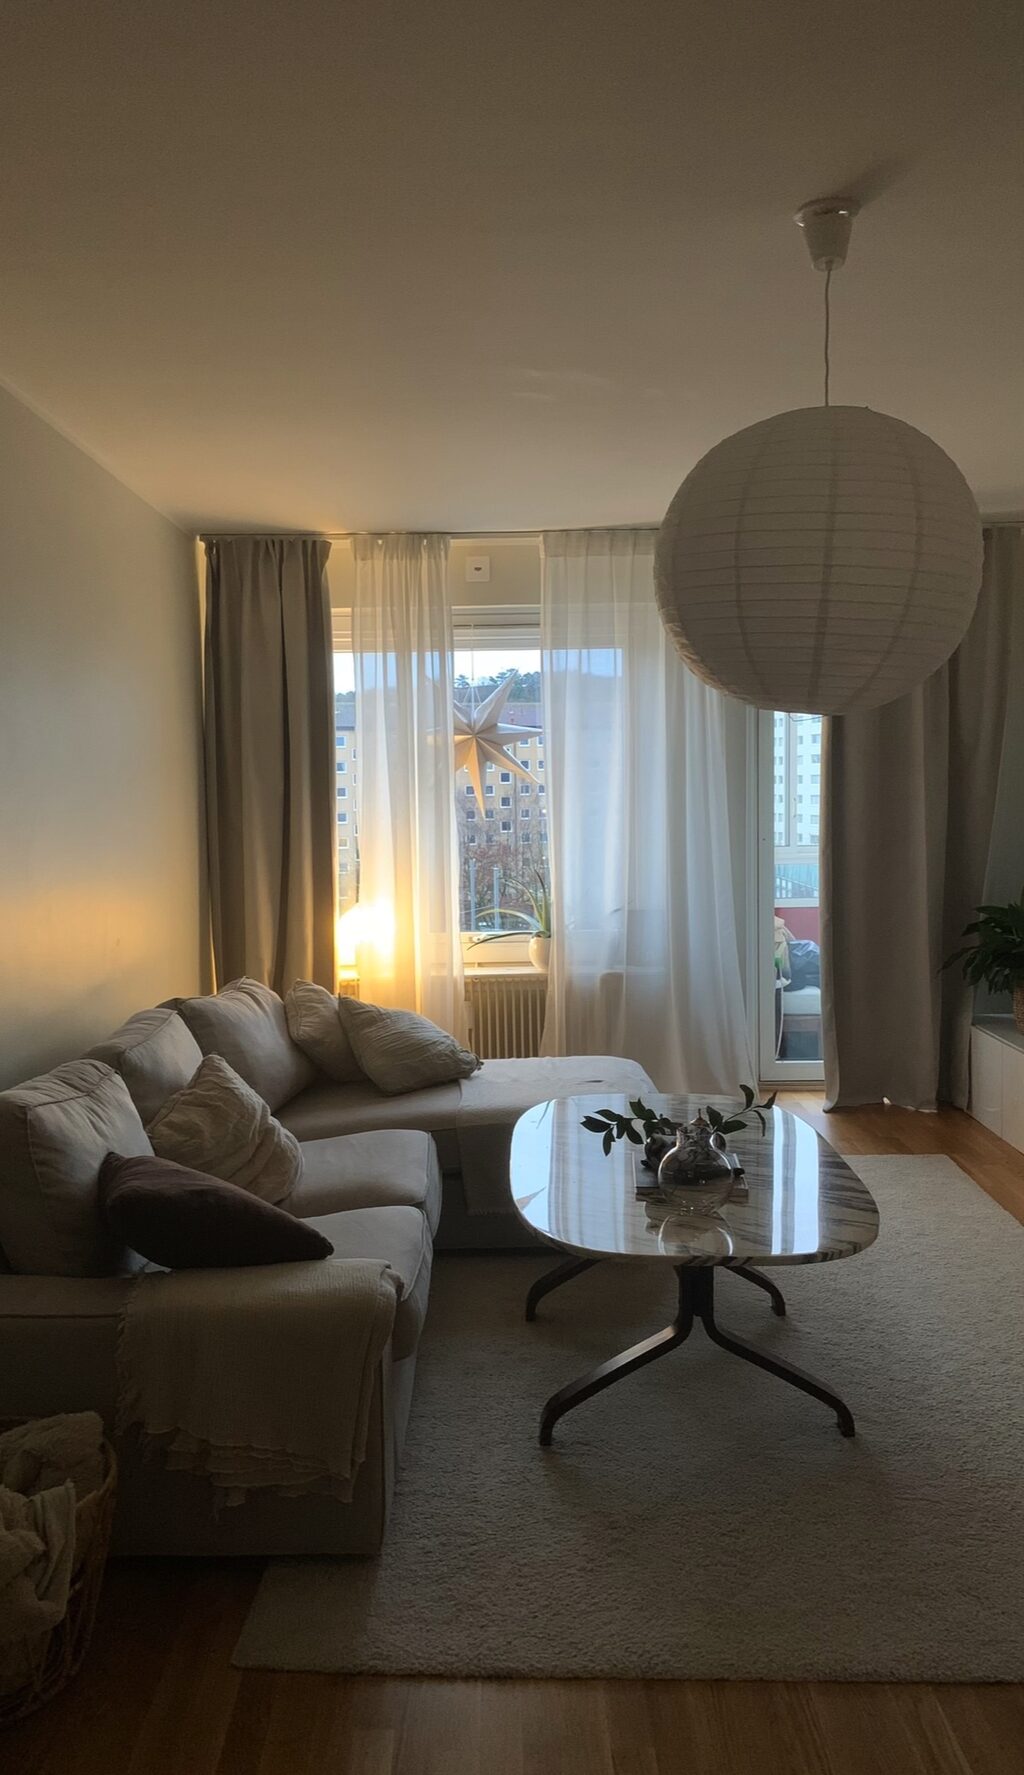 Lägenhetsbyte - Wieselgrensplatsen 5, 417 39 Göteborg